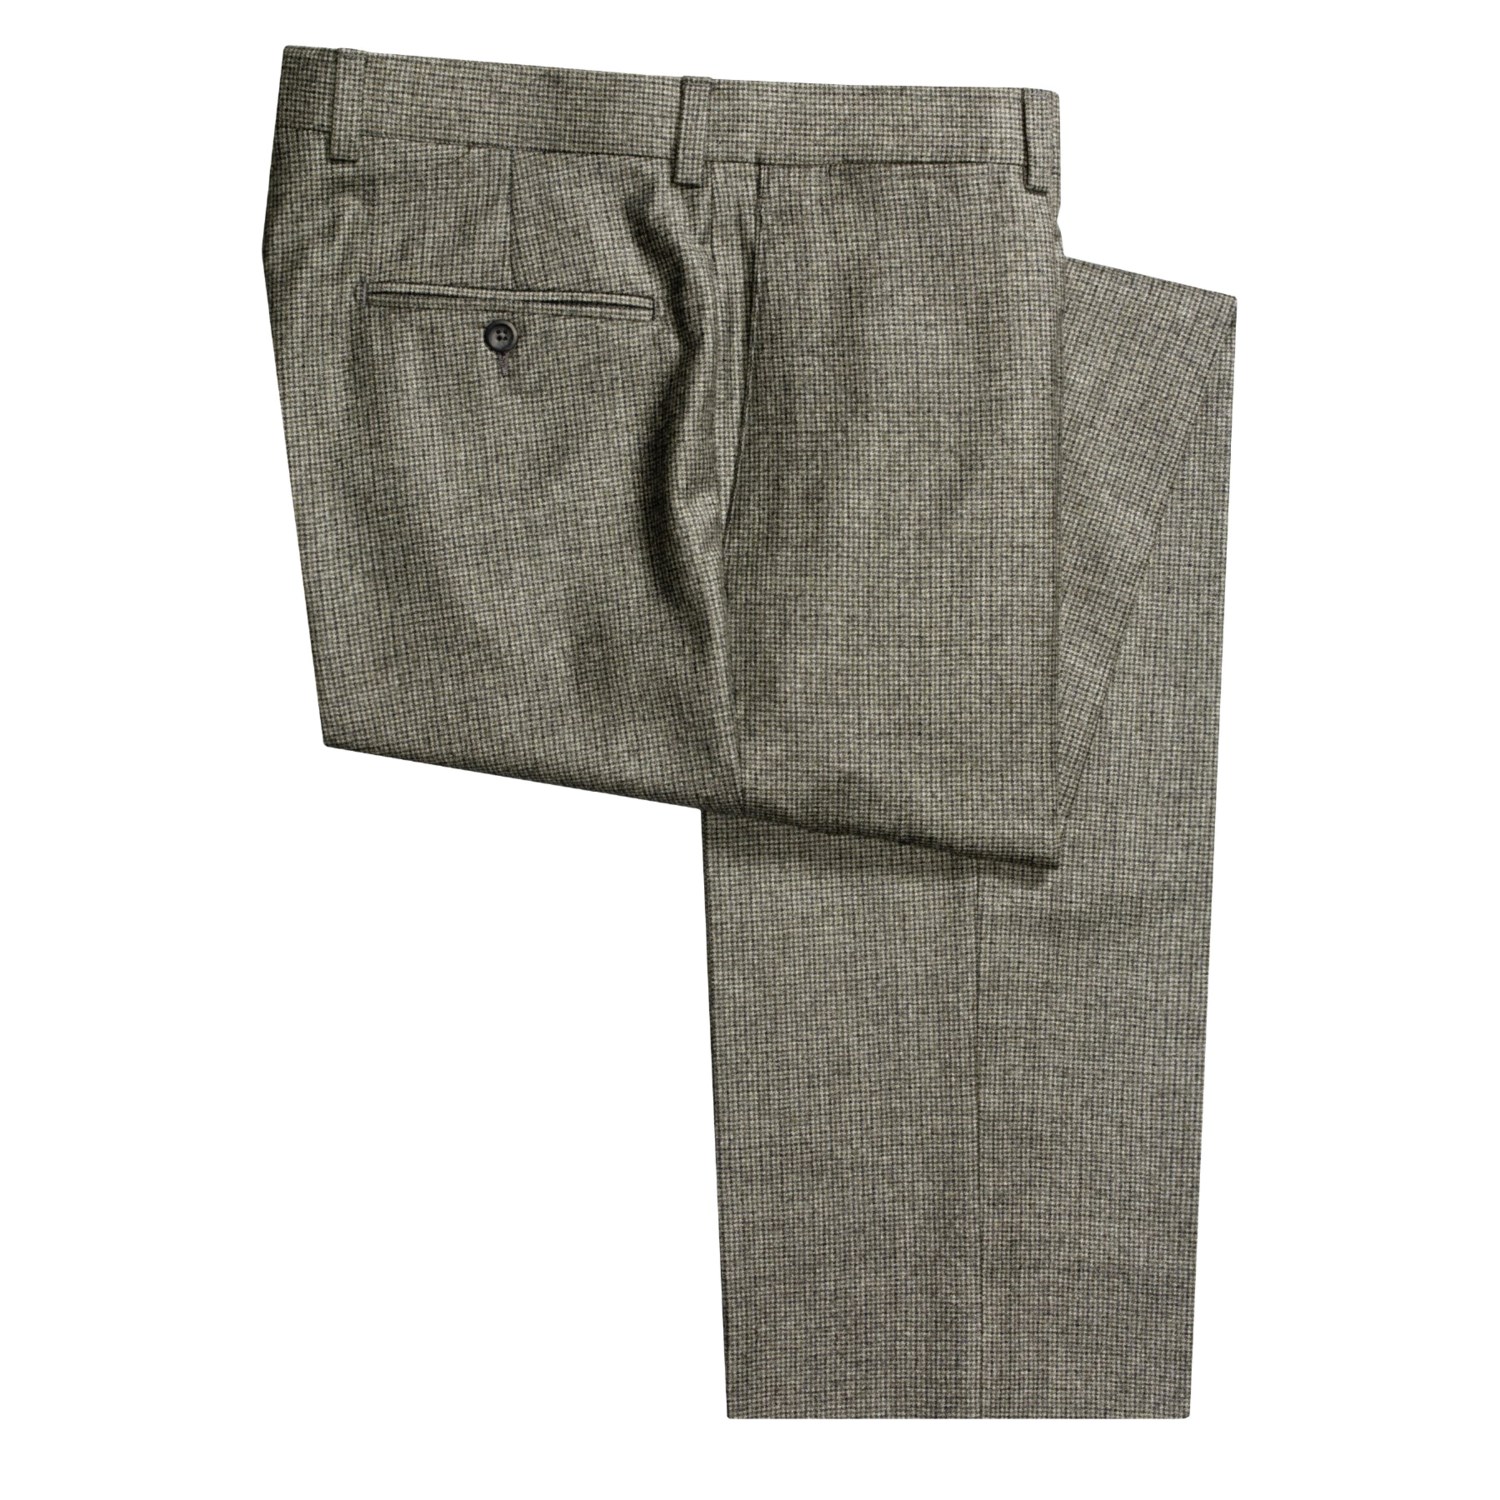 Riviera Houndstooth Dress Pants (For Men) 2135V - Save 42%